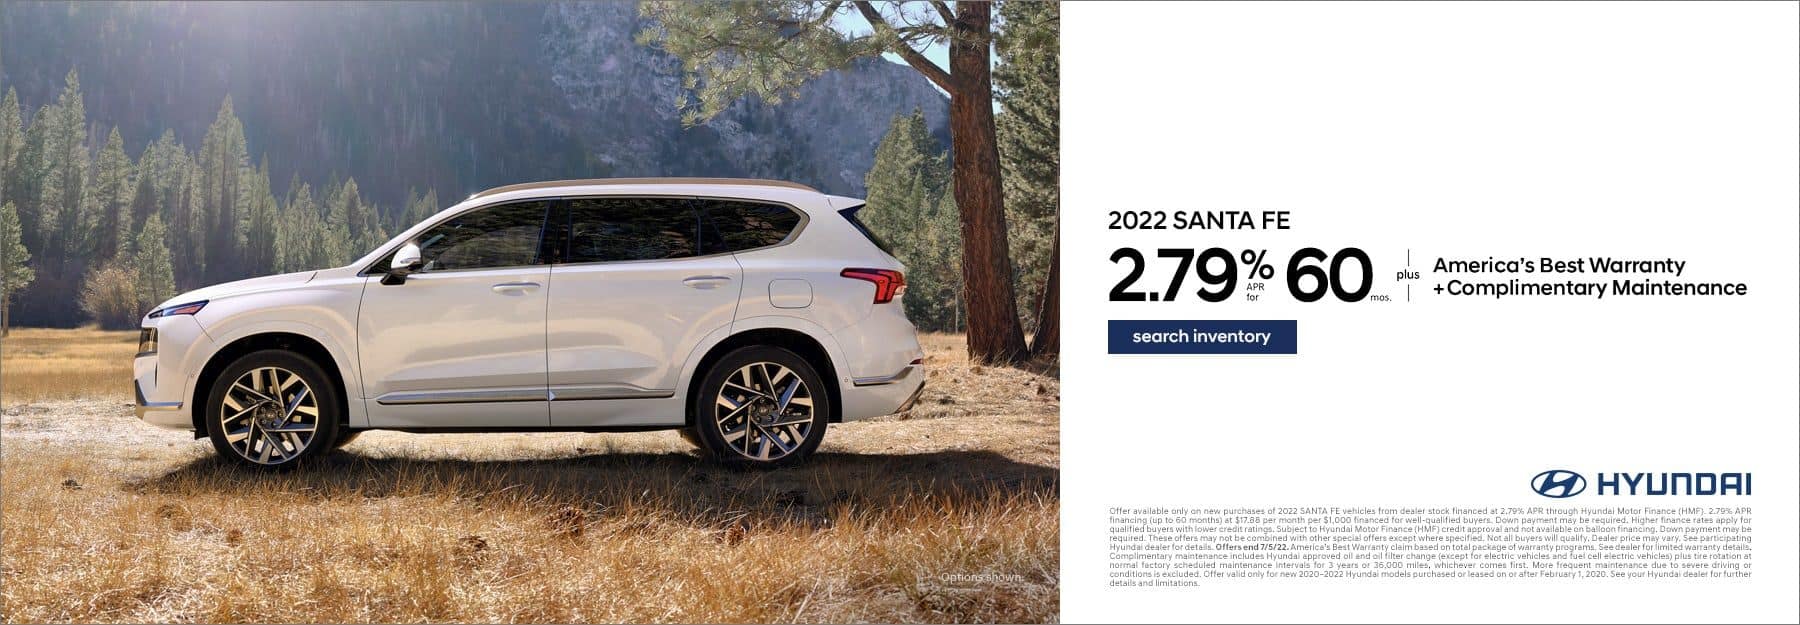 2022 Hyundai Santa Fe offer